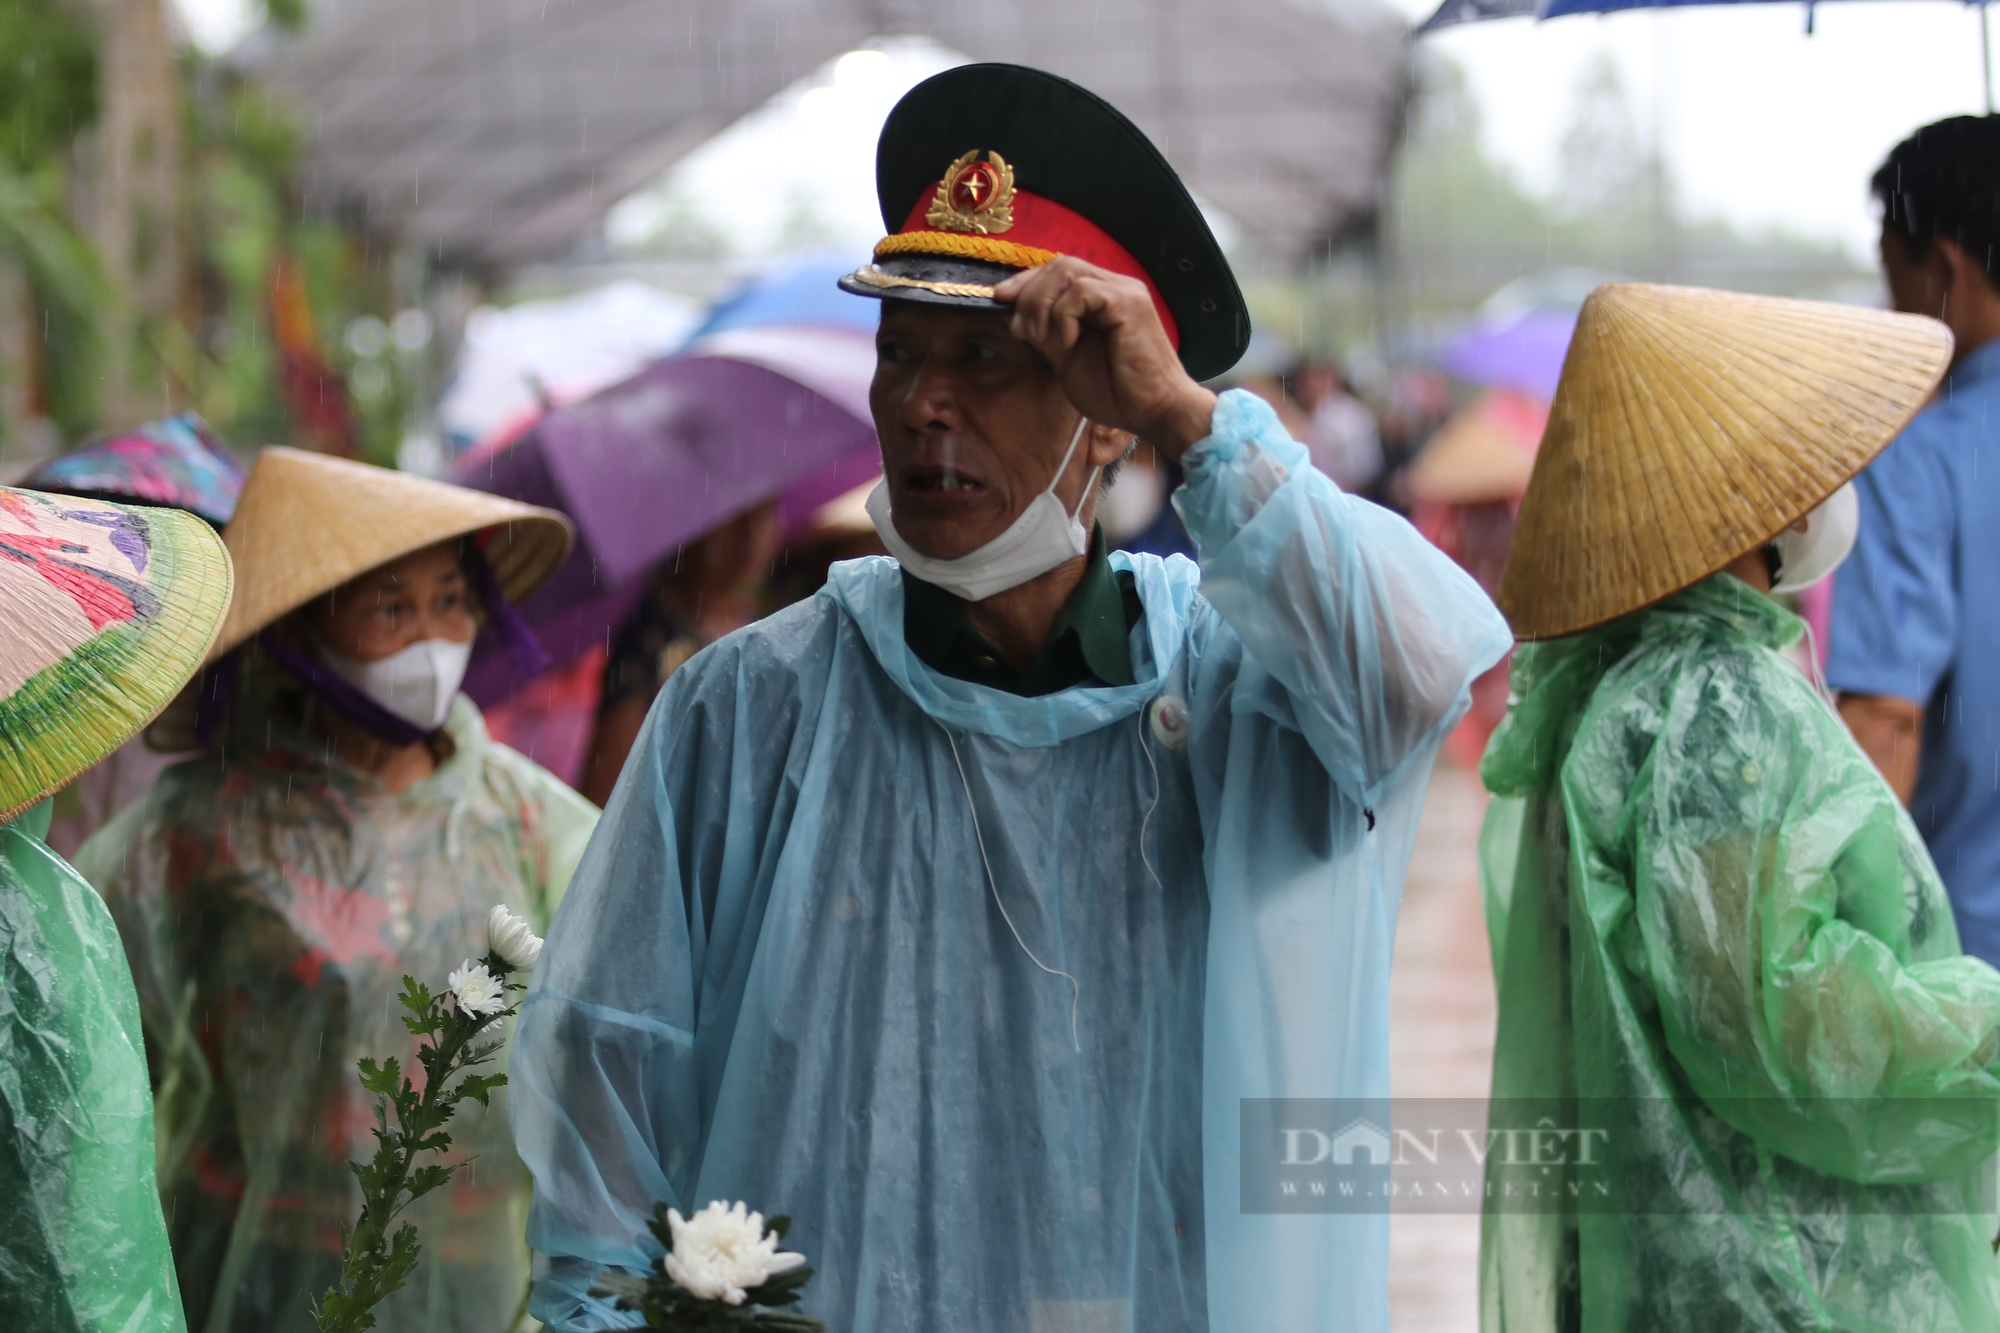 Xúc động cảnh người dân đứng dưới mưa đón Đại úy Lê Ánh Sáng trở về quê nhà - Ảnh 13.